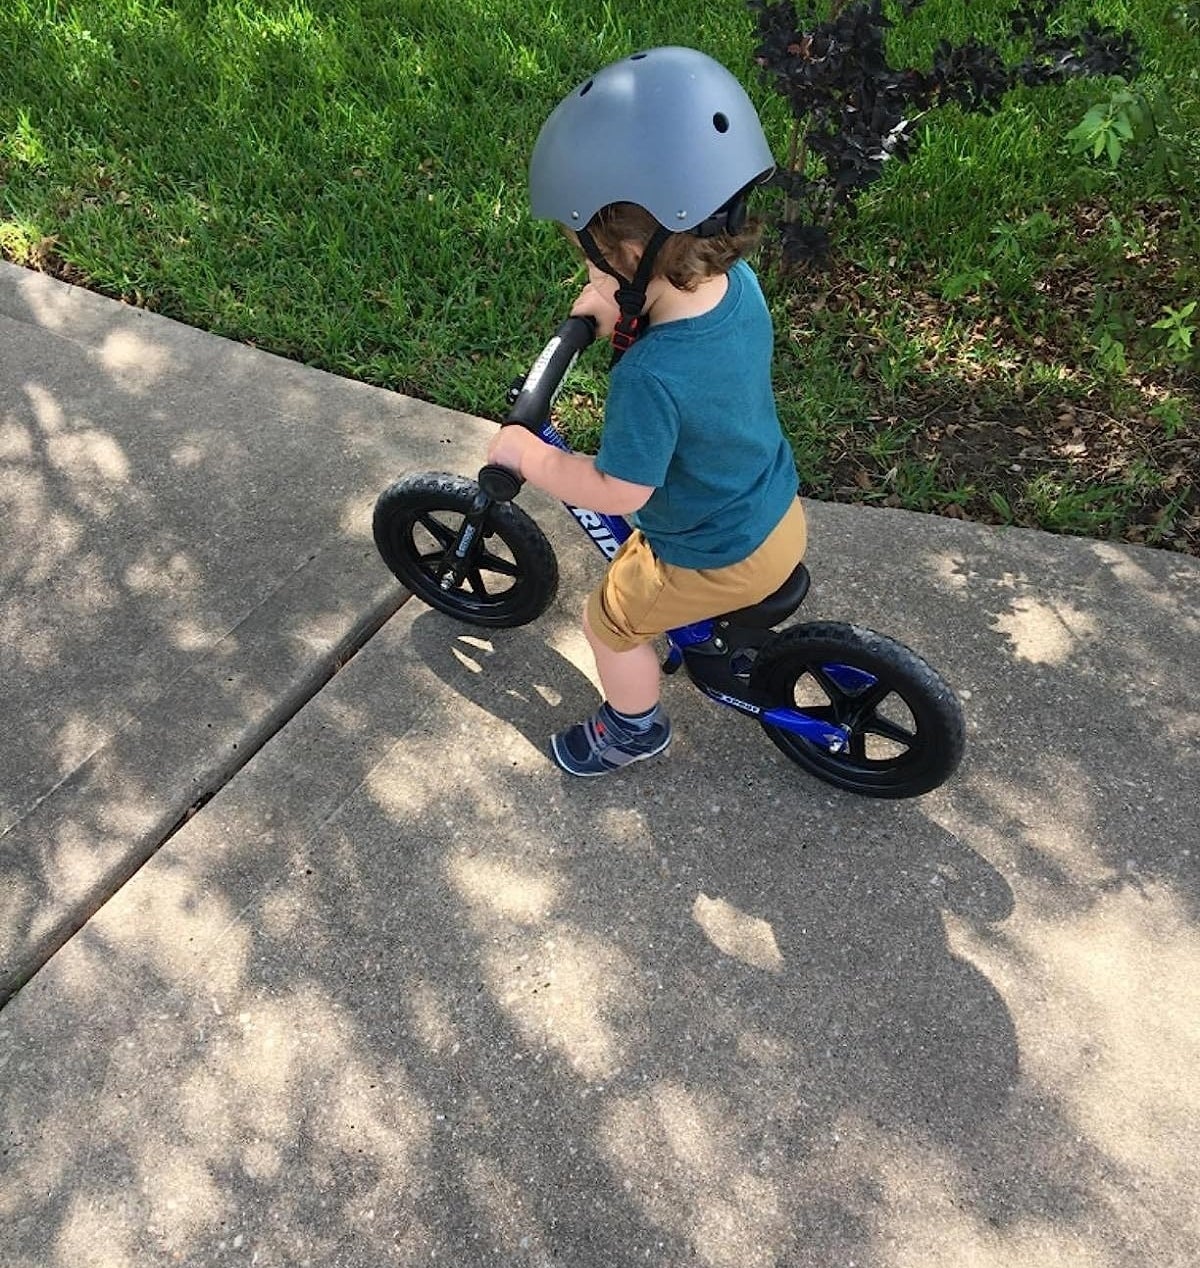 Child rides on a balance bike